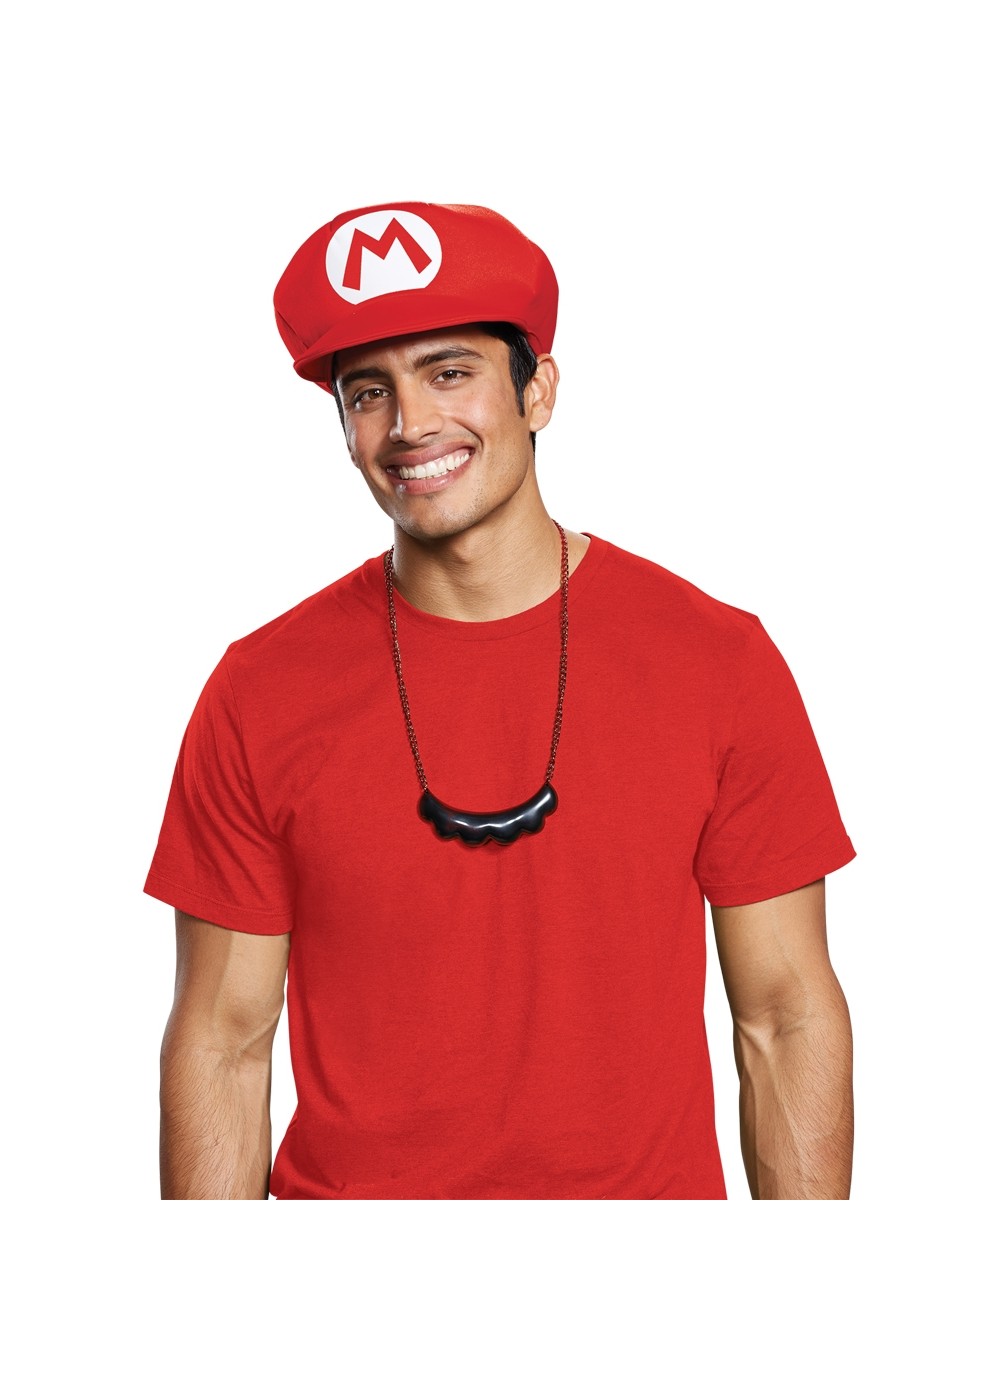 Mario Mustache Necklace